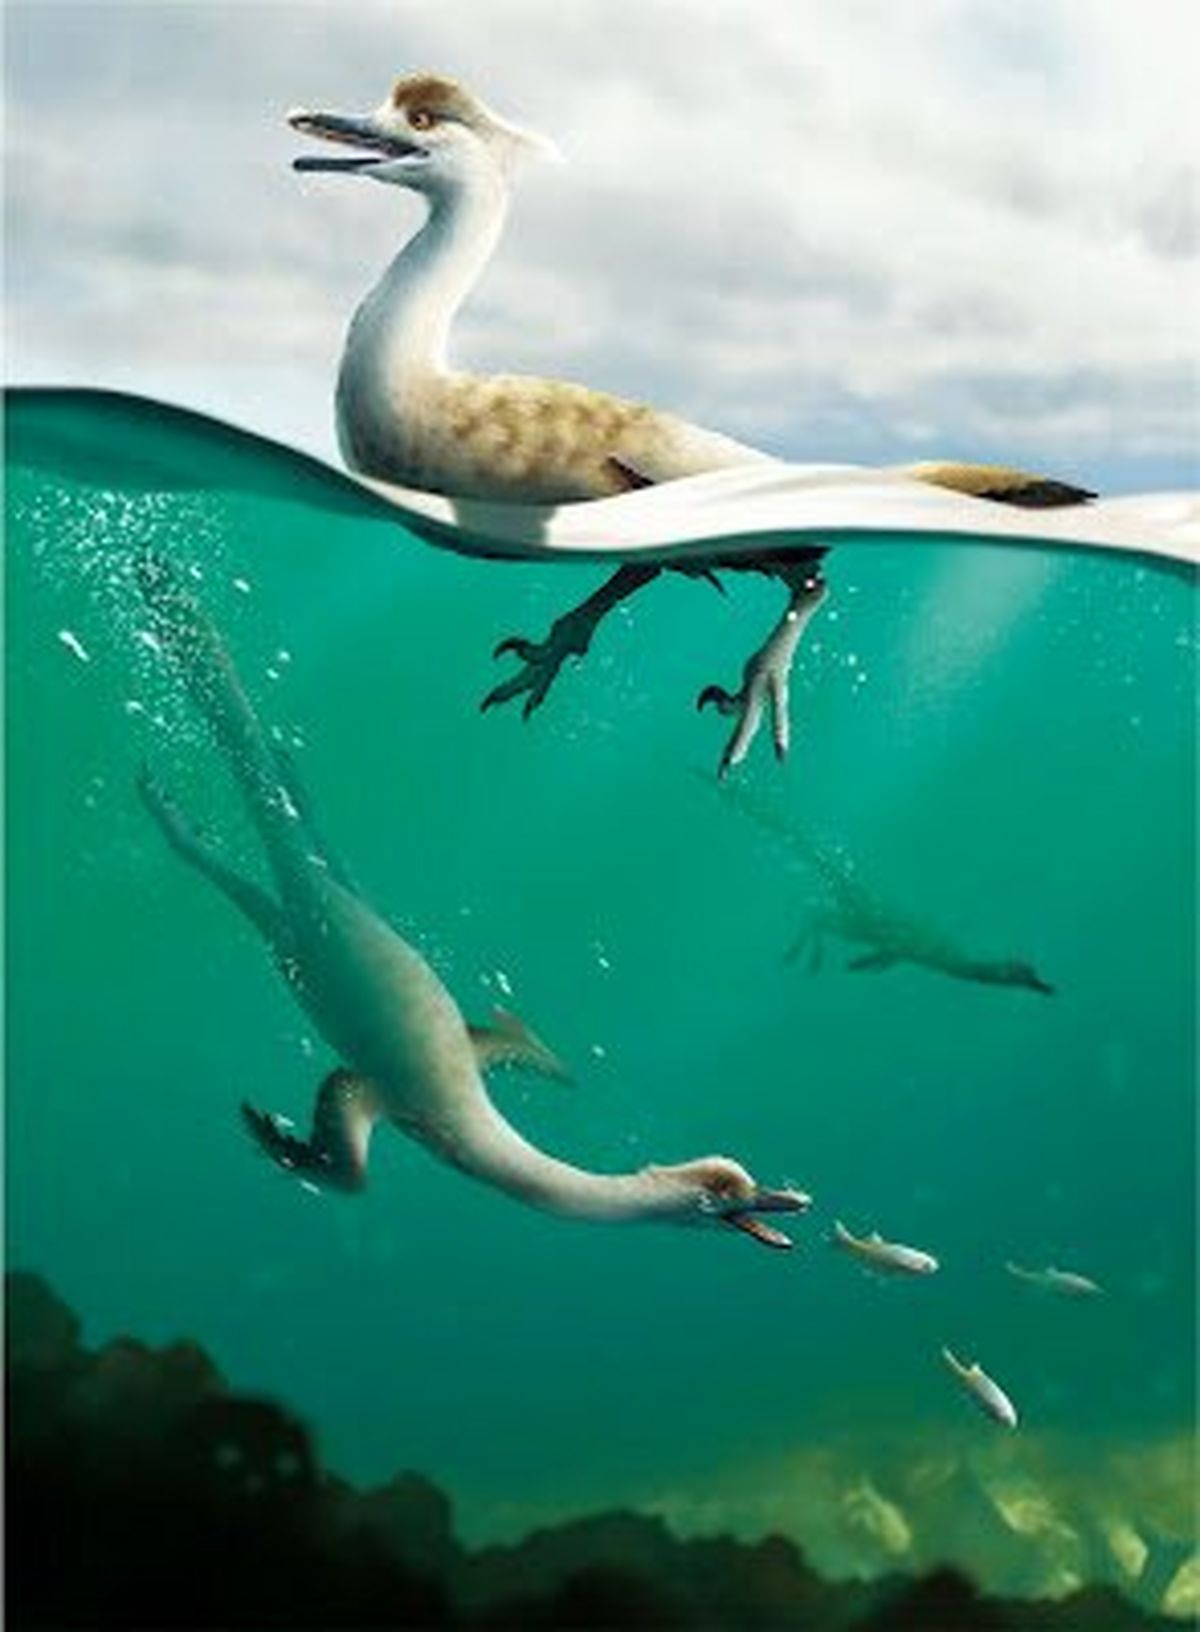 دایناسورهای عجیب تبدیل به اردک شدند!+عکس